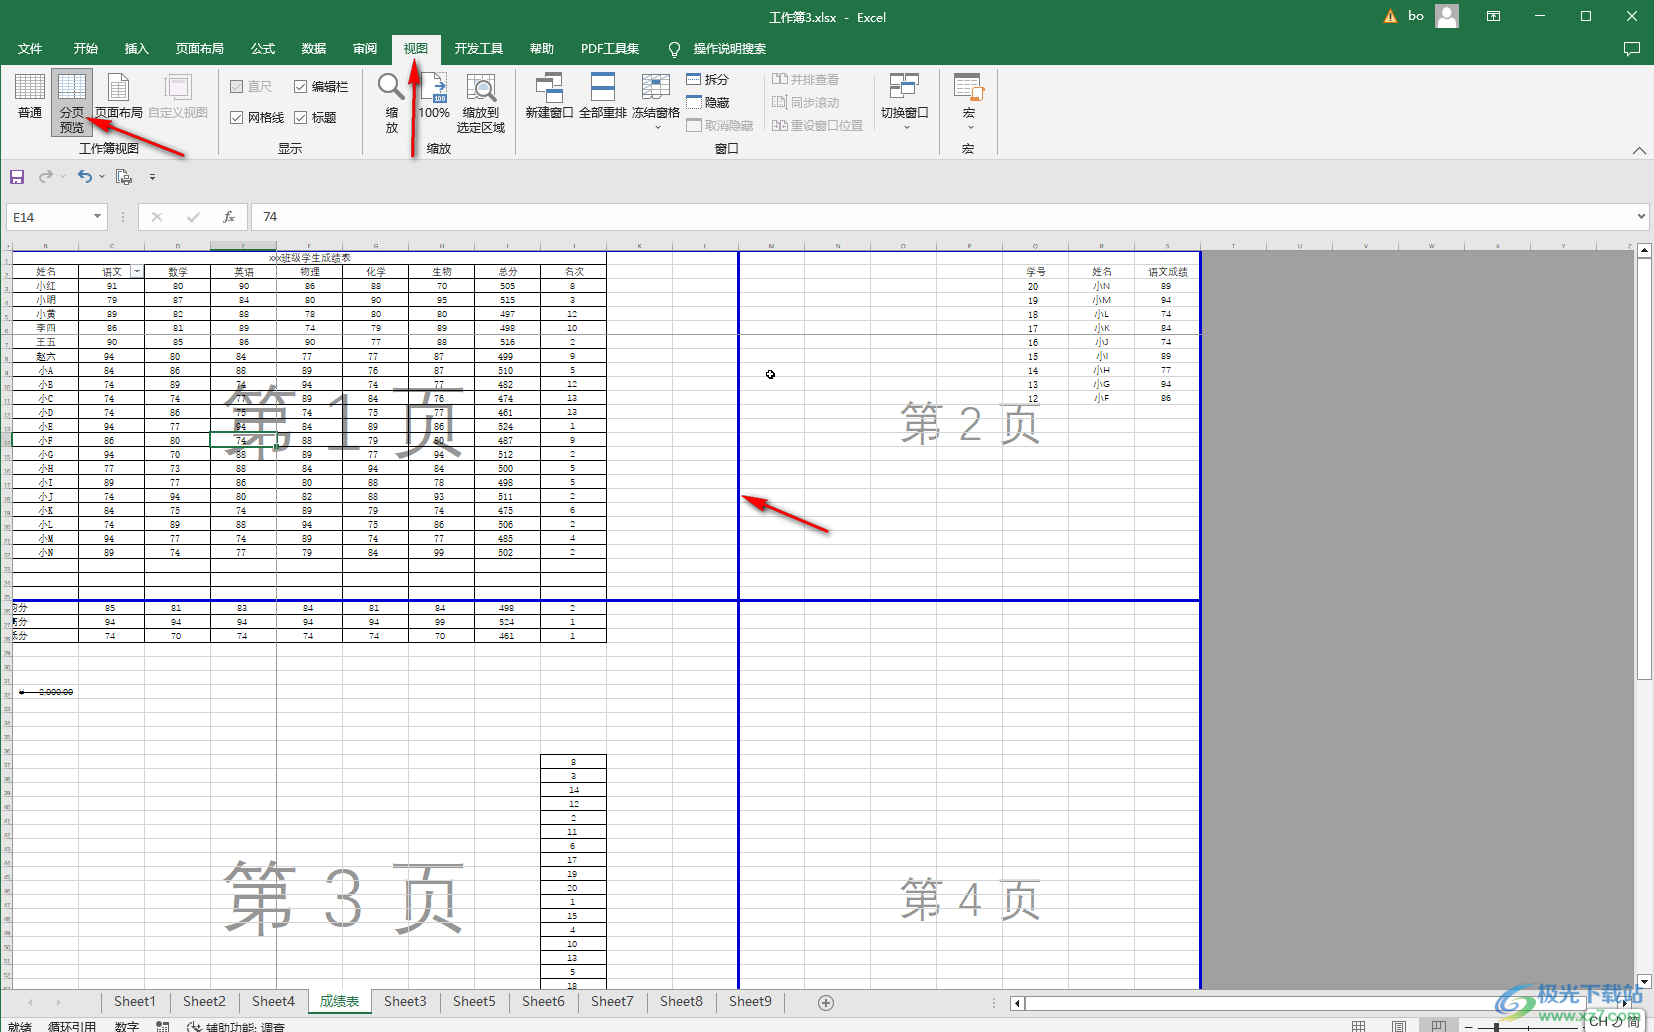 如何在在Excel表格中插入图片,使其刚好填满整个单元格?